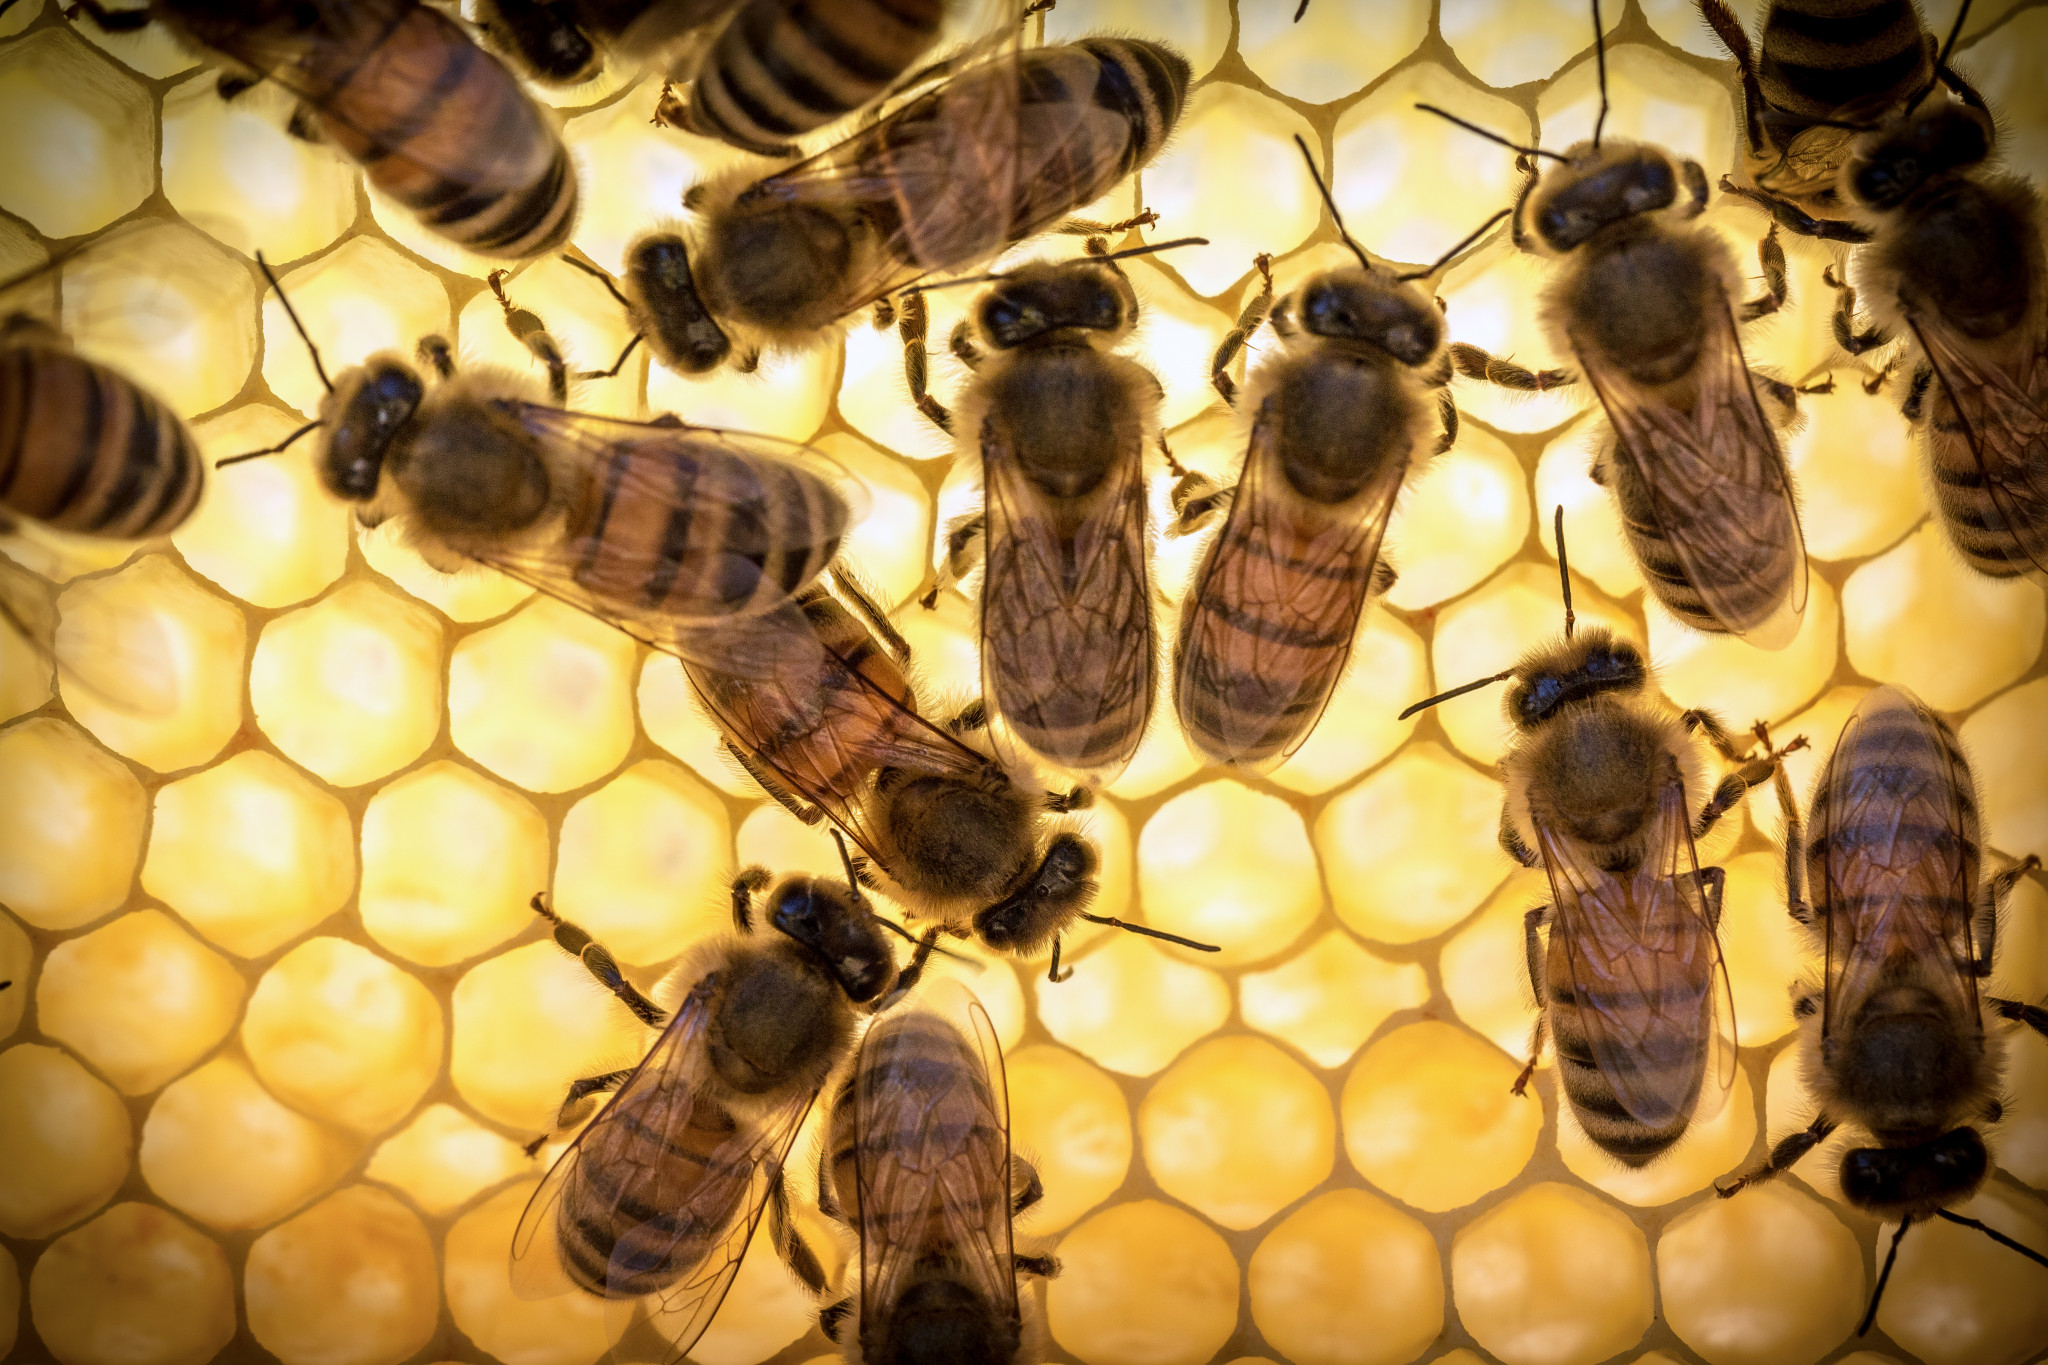 La jalea real de abeja no se recomienda usar por la noche, ya que bajo su influencia aumenta la actividad nerviosa y el posible insomnio